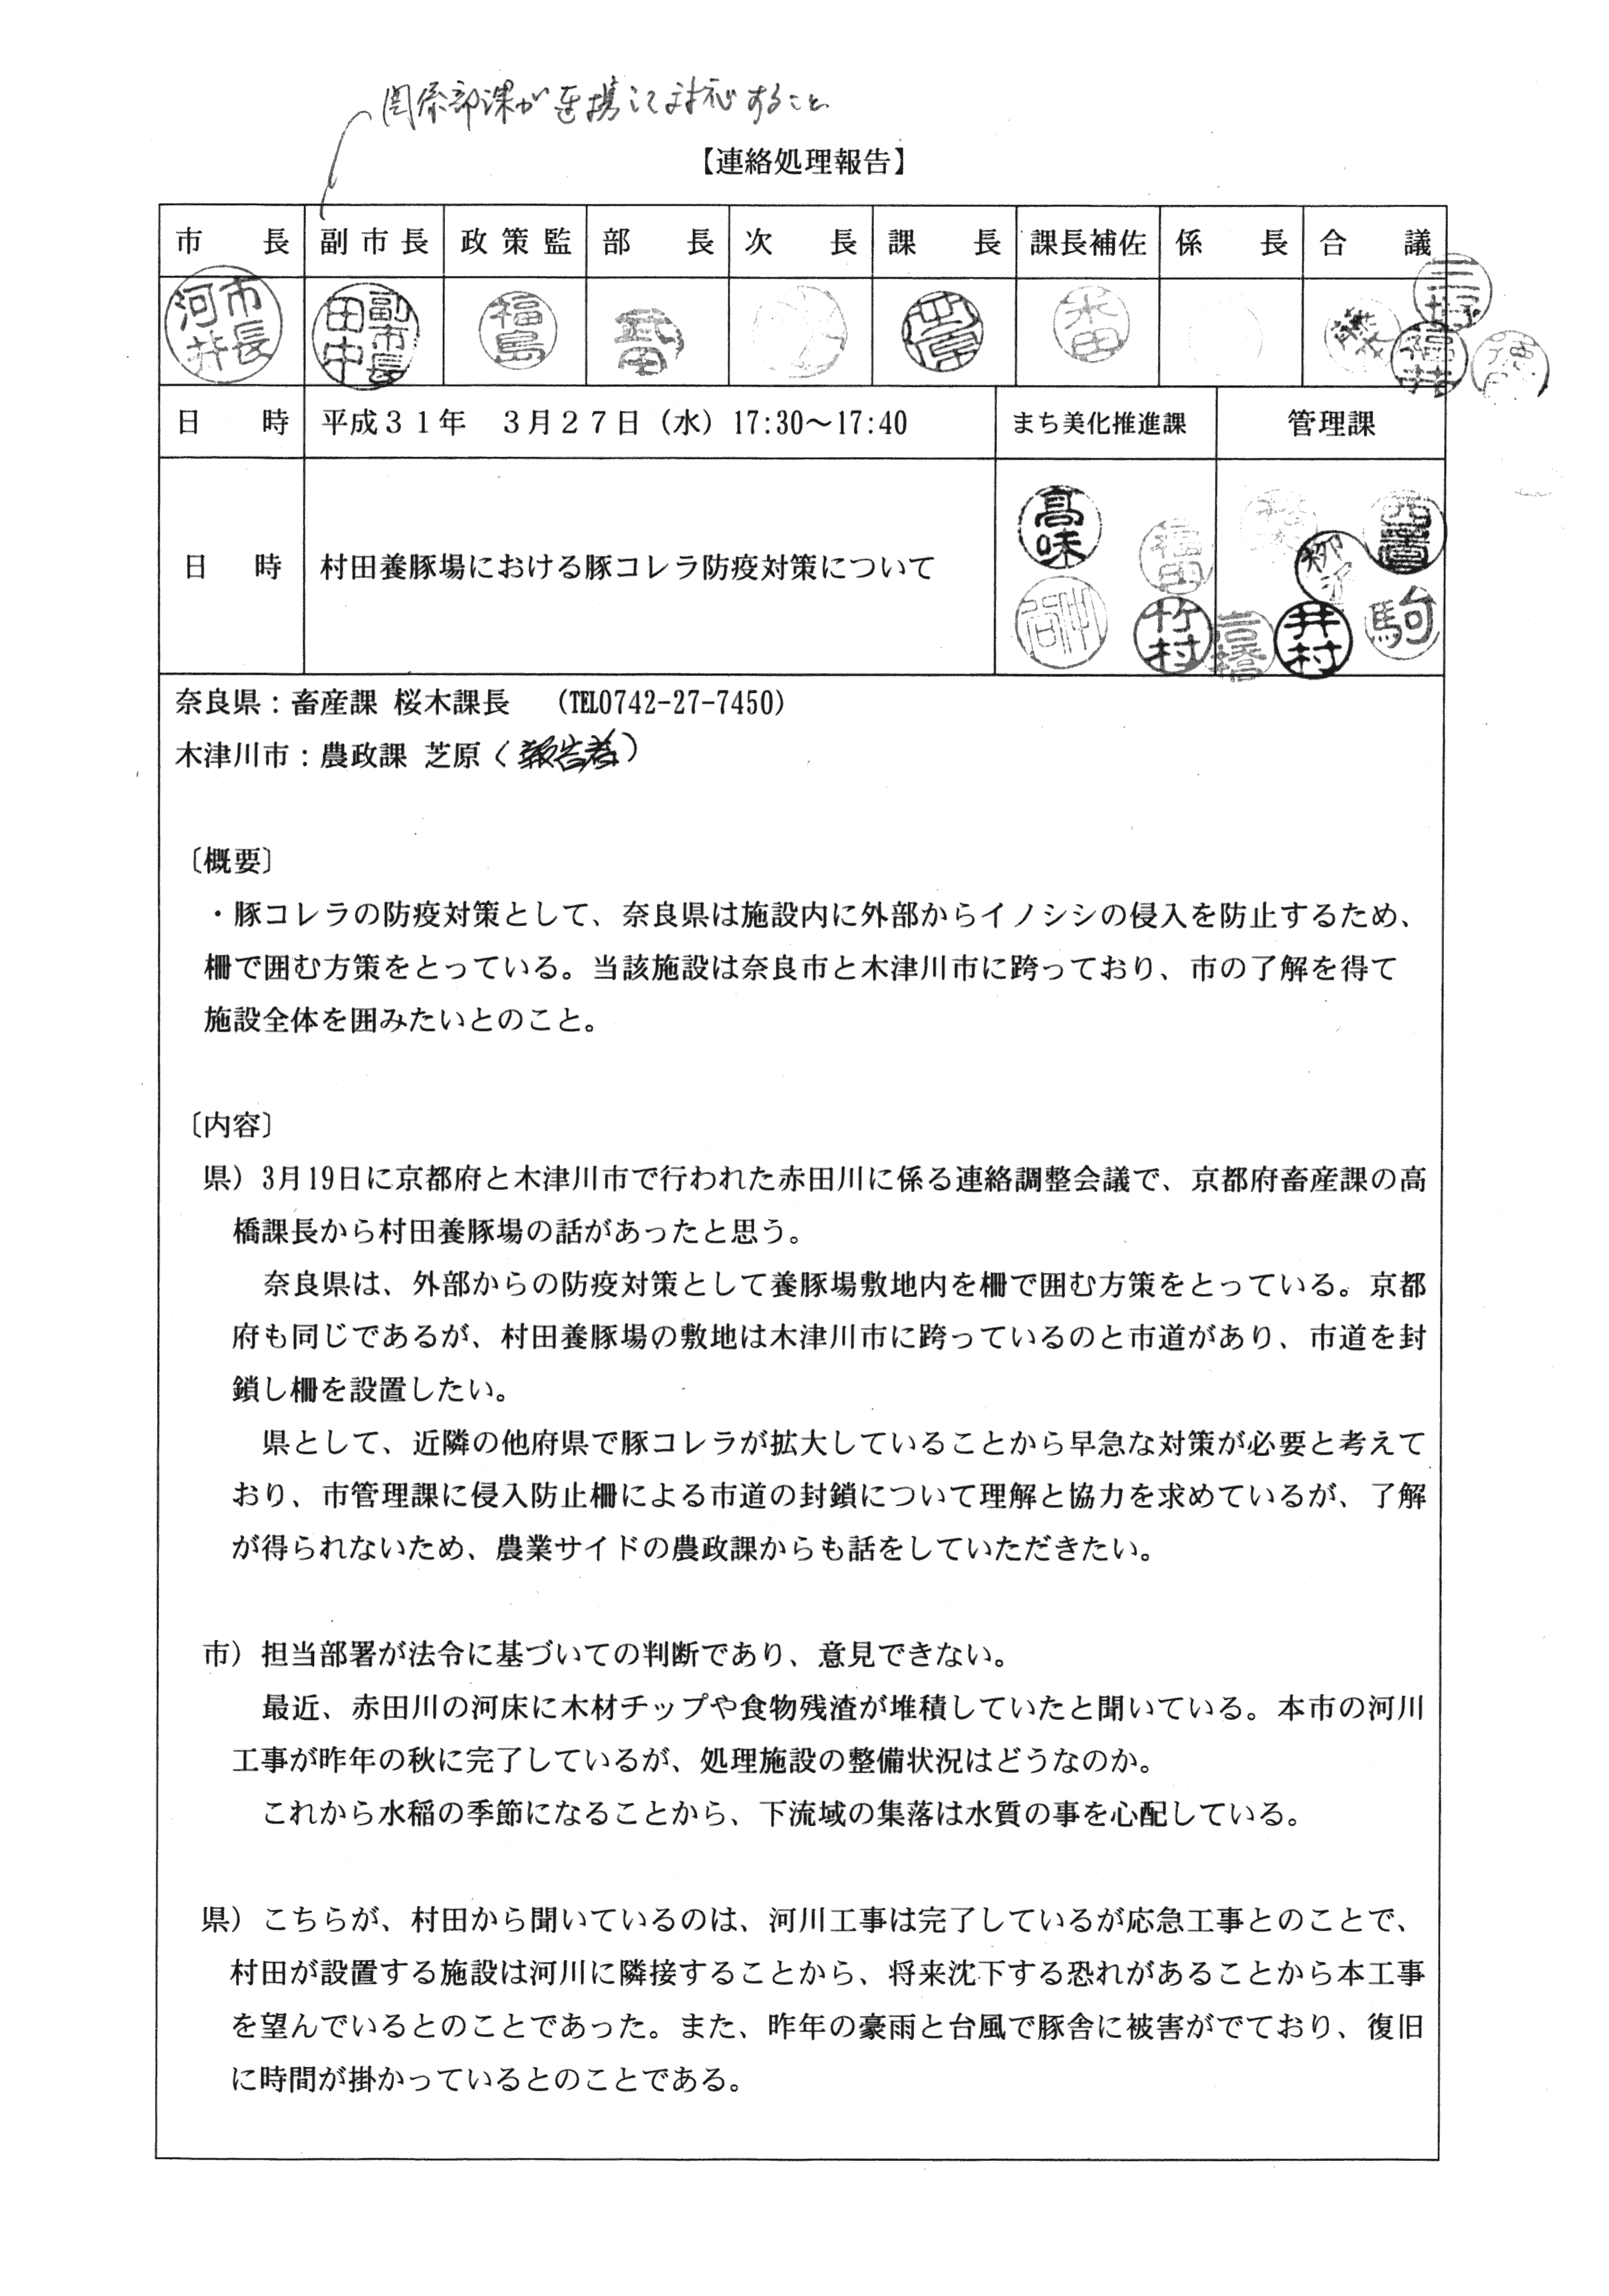 平成31年3月27日-村田養豚場における豚コレラ防疫対策について